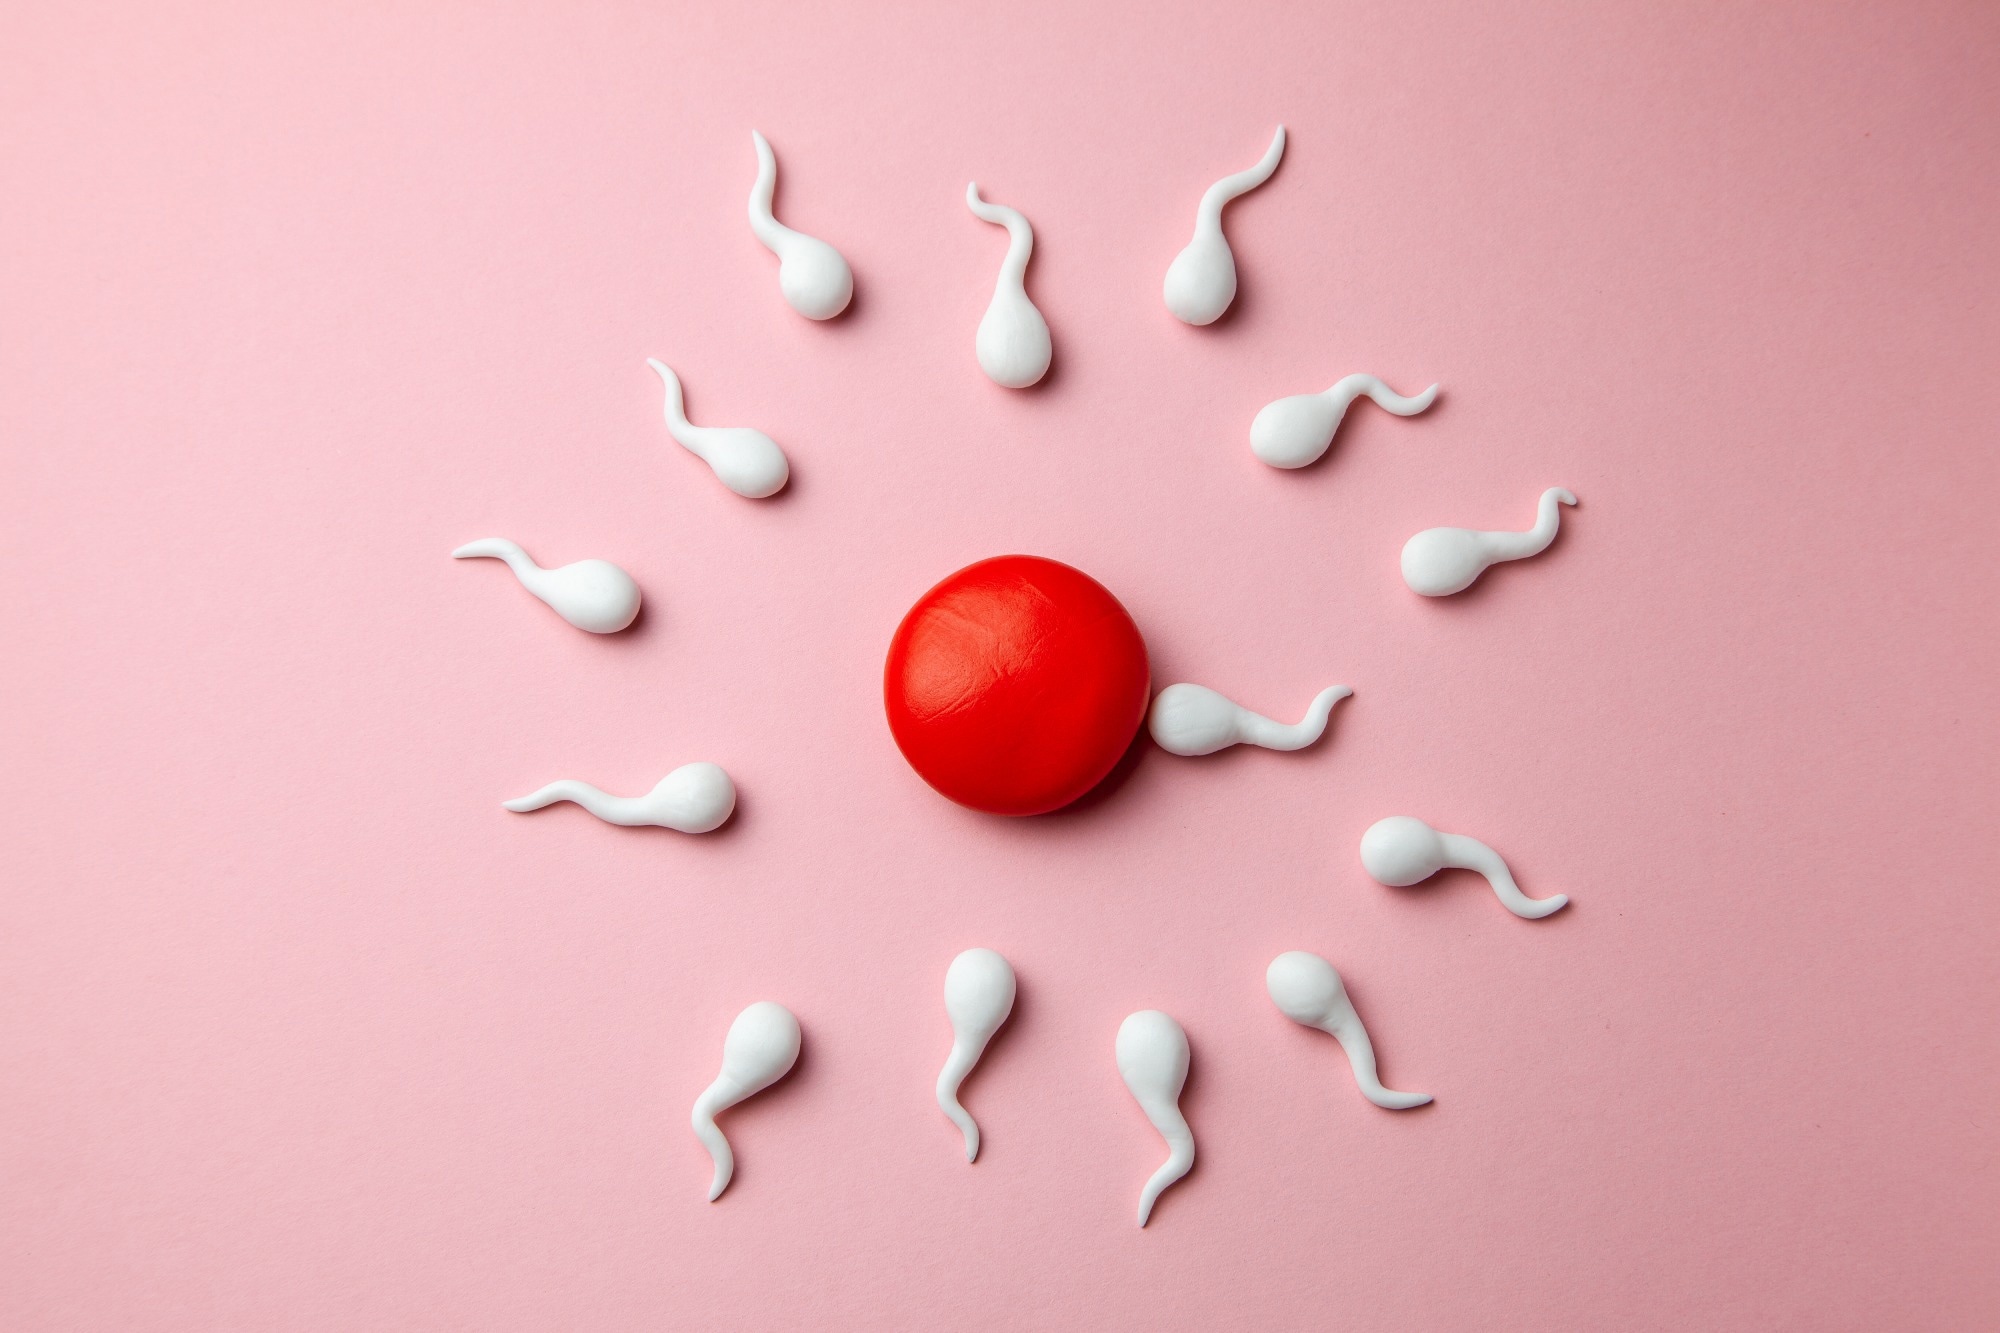 La investigación evalúa los efectos de los agentes físicos en la fertilidad masculina